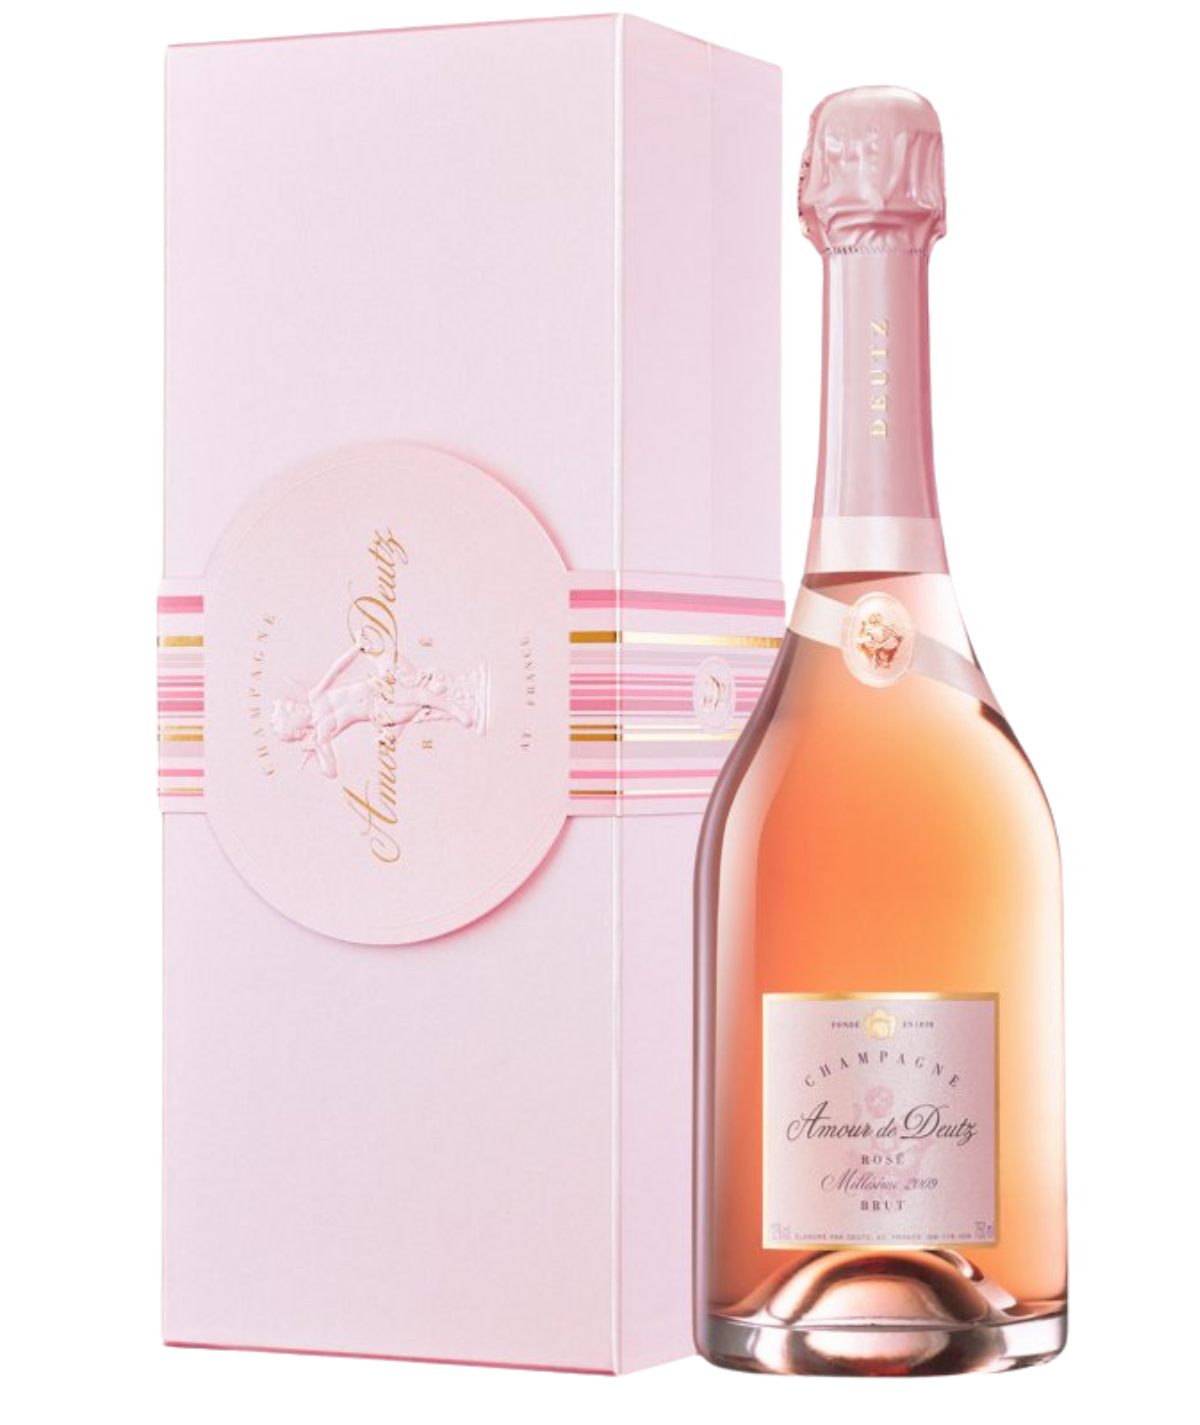 DEUTZ champagne Amour de Deutz rosé 2009 vintage